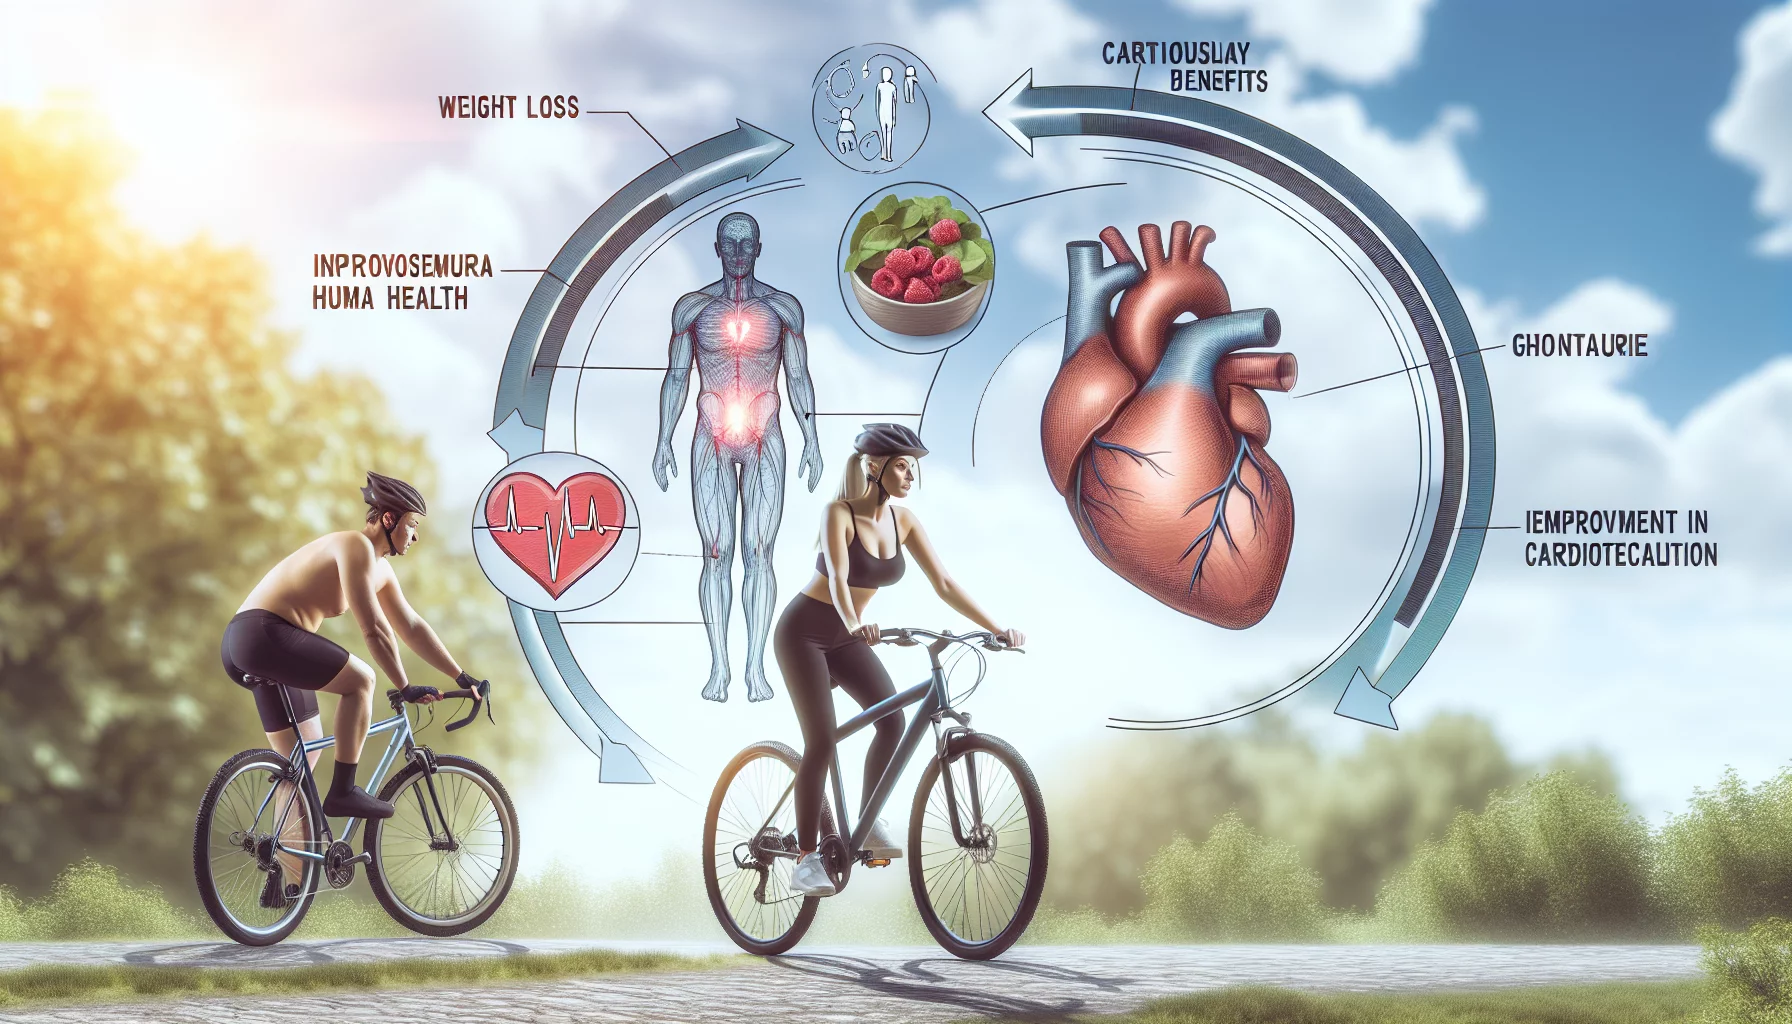 Cyclisme : pourquoi c'est un excellent choix pour perdre du poids et améliorer la santé cardiovasculaire